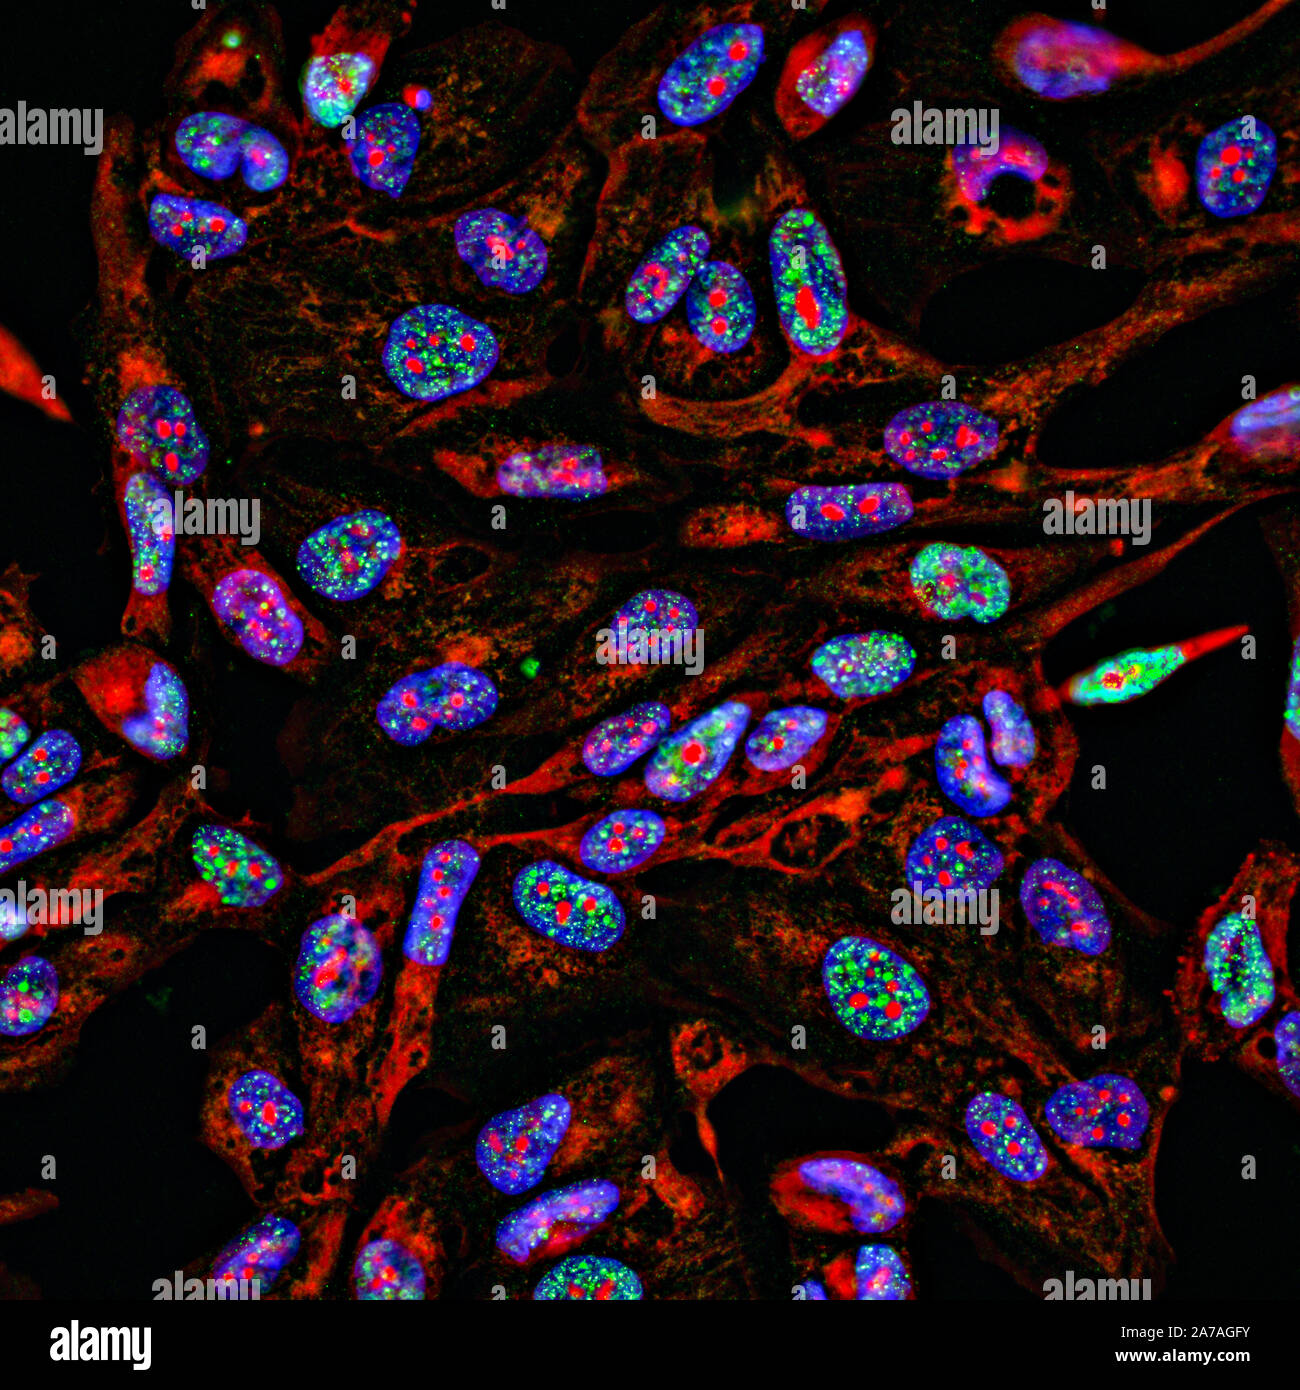 L'immunofluorescence d'images de fluorescence des cellules de cancer de plus en plus en 2D avec des noyaux en bleu, le cytoplasme en rouge et la dégradation de l'ADN des focus en vert Banque D'Images